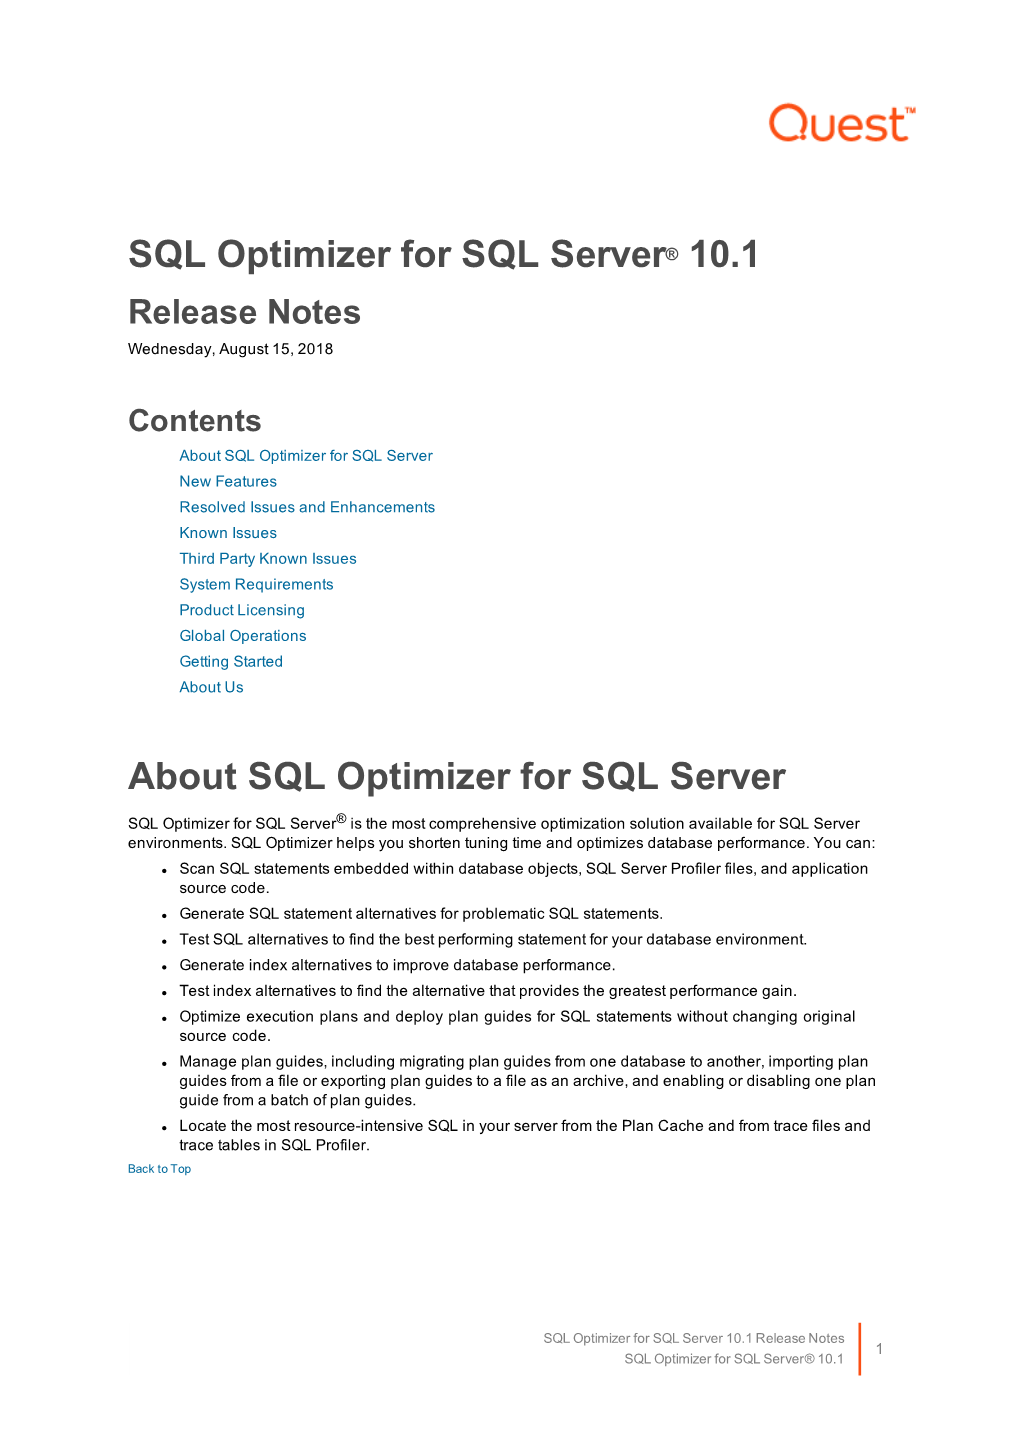 SQL Optimizer for SQL Server Release Notes